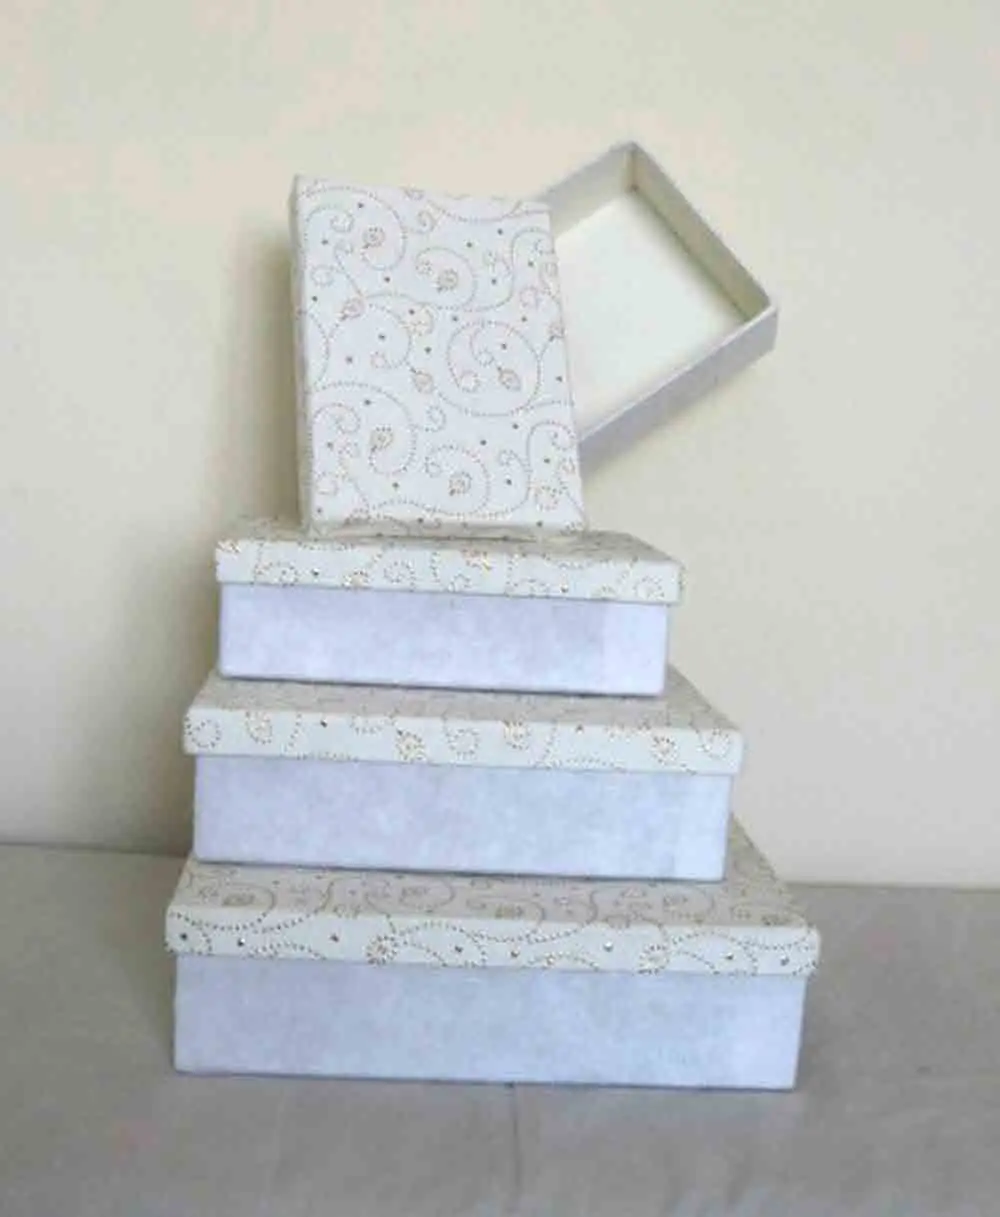 Individuelle handgefertigte recycelte und metallisch bedruckte Geschenkverpackungsbox aus Baumwolle Papier rechteckige Form Hochzeit und Party-Geschenke